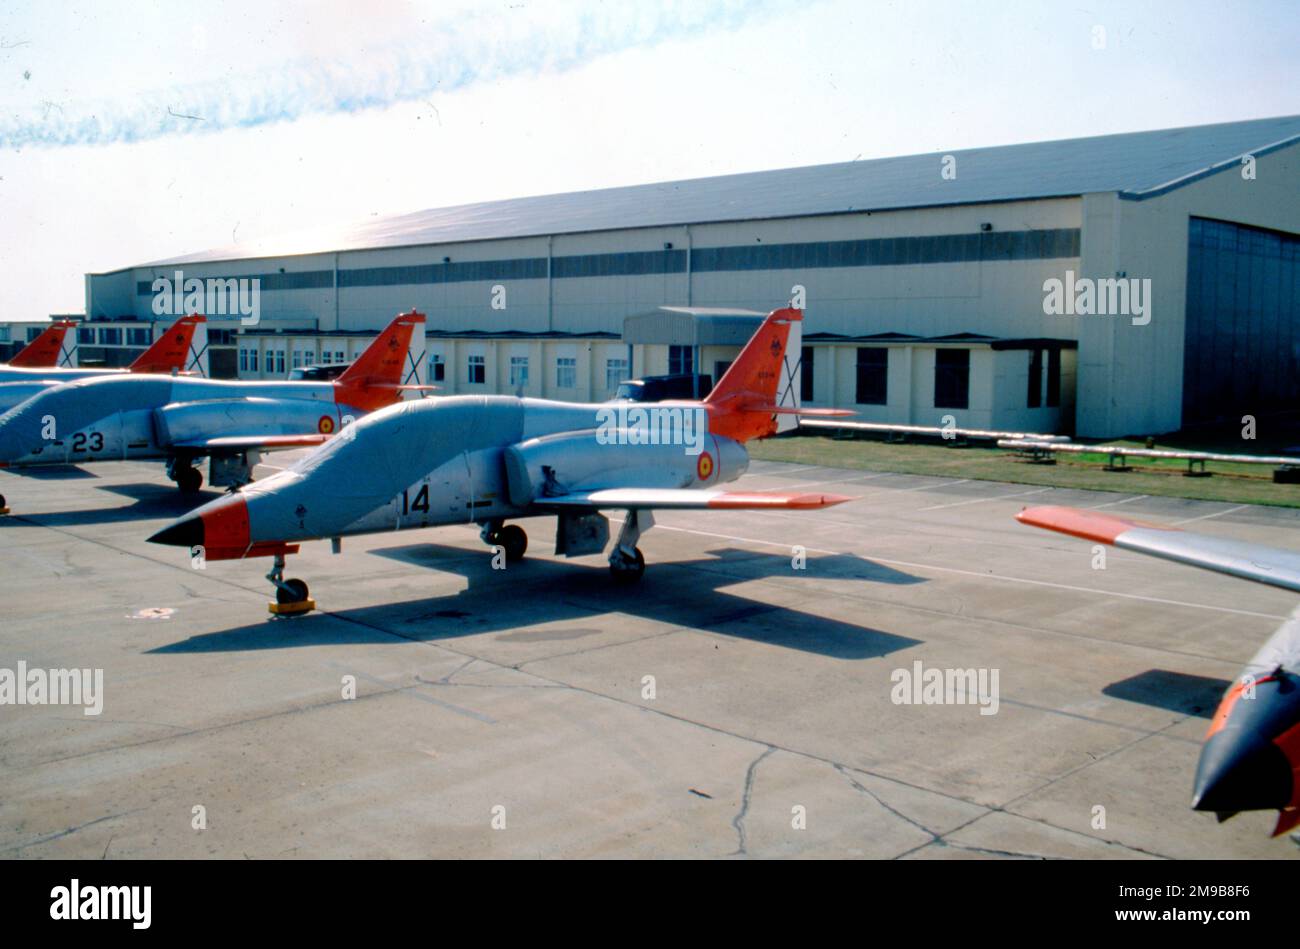 Ejército del Aire - CASA C-101EB Aviojet E.12B-41 / 79-14 (msn 79), della squadra di aerobica 'Patrulla Aguila' (Ala 79 / Esc 793), al RAF Fairford il 20 luglio 1991. (Ejercito del Aire - Aeronautica Spagnola) Foto Stock